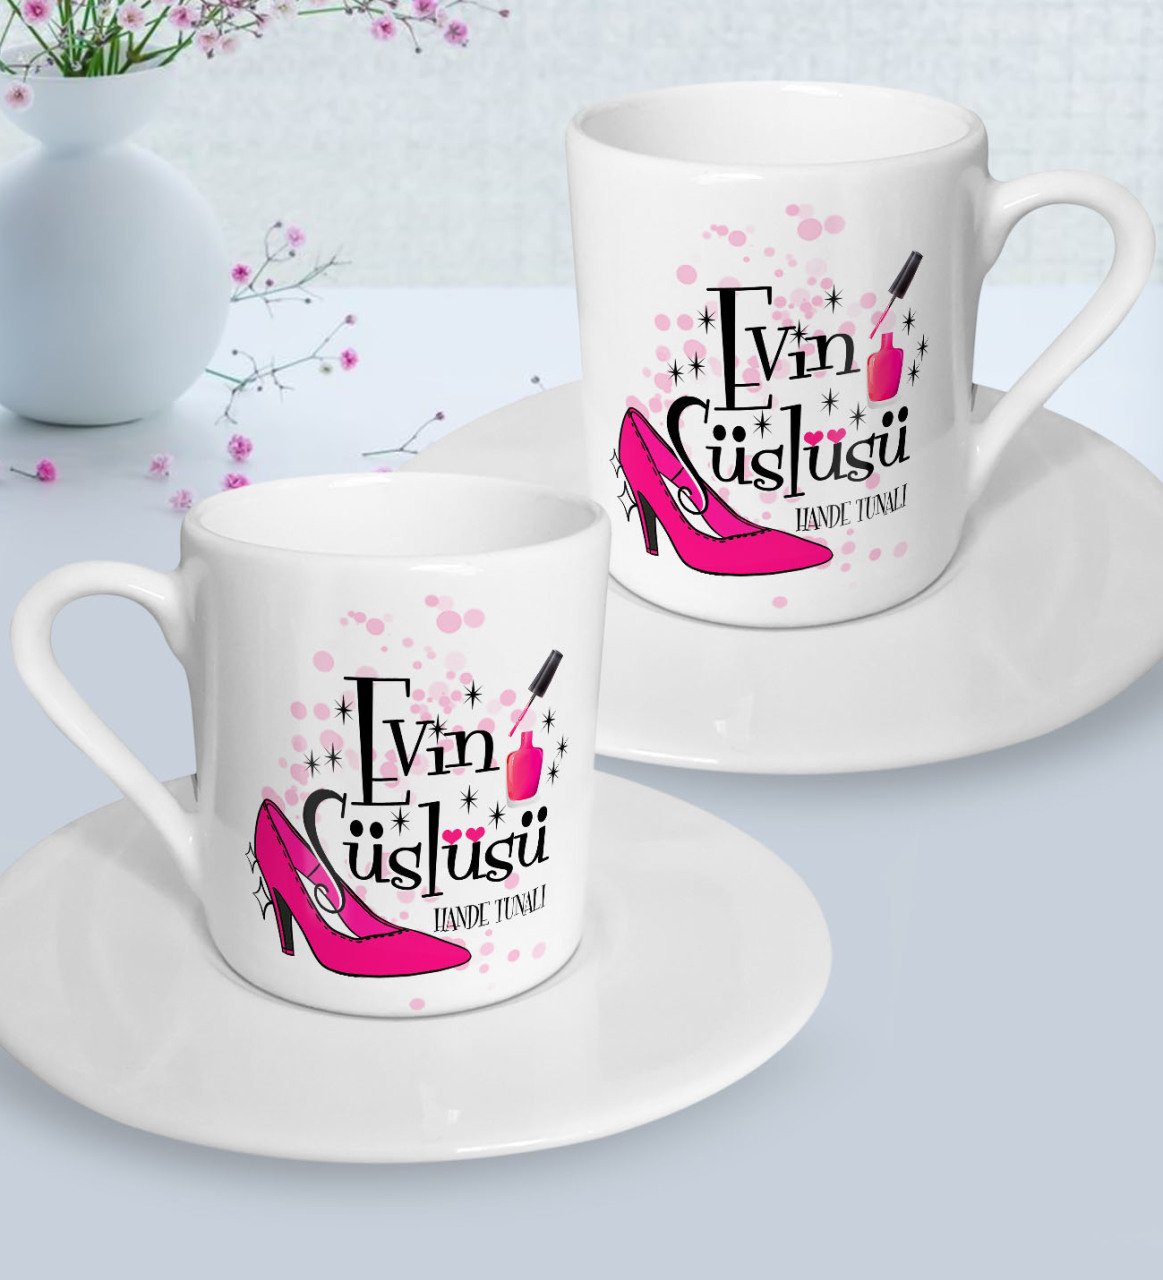 Kişiye Özel Anneler Günü Temalı Evin Süslüsü Tasarımlı İkili Türk Kahvesi Fincanı Seti-1